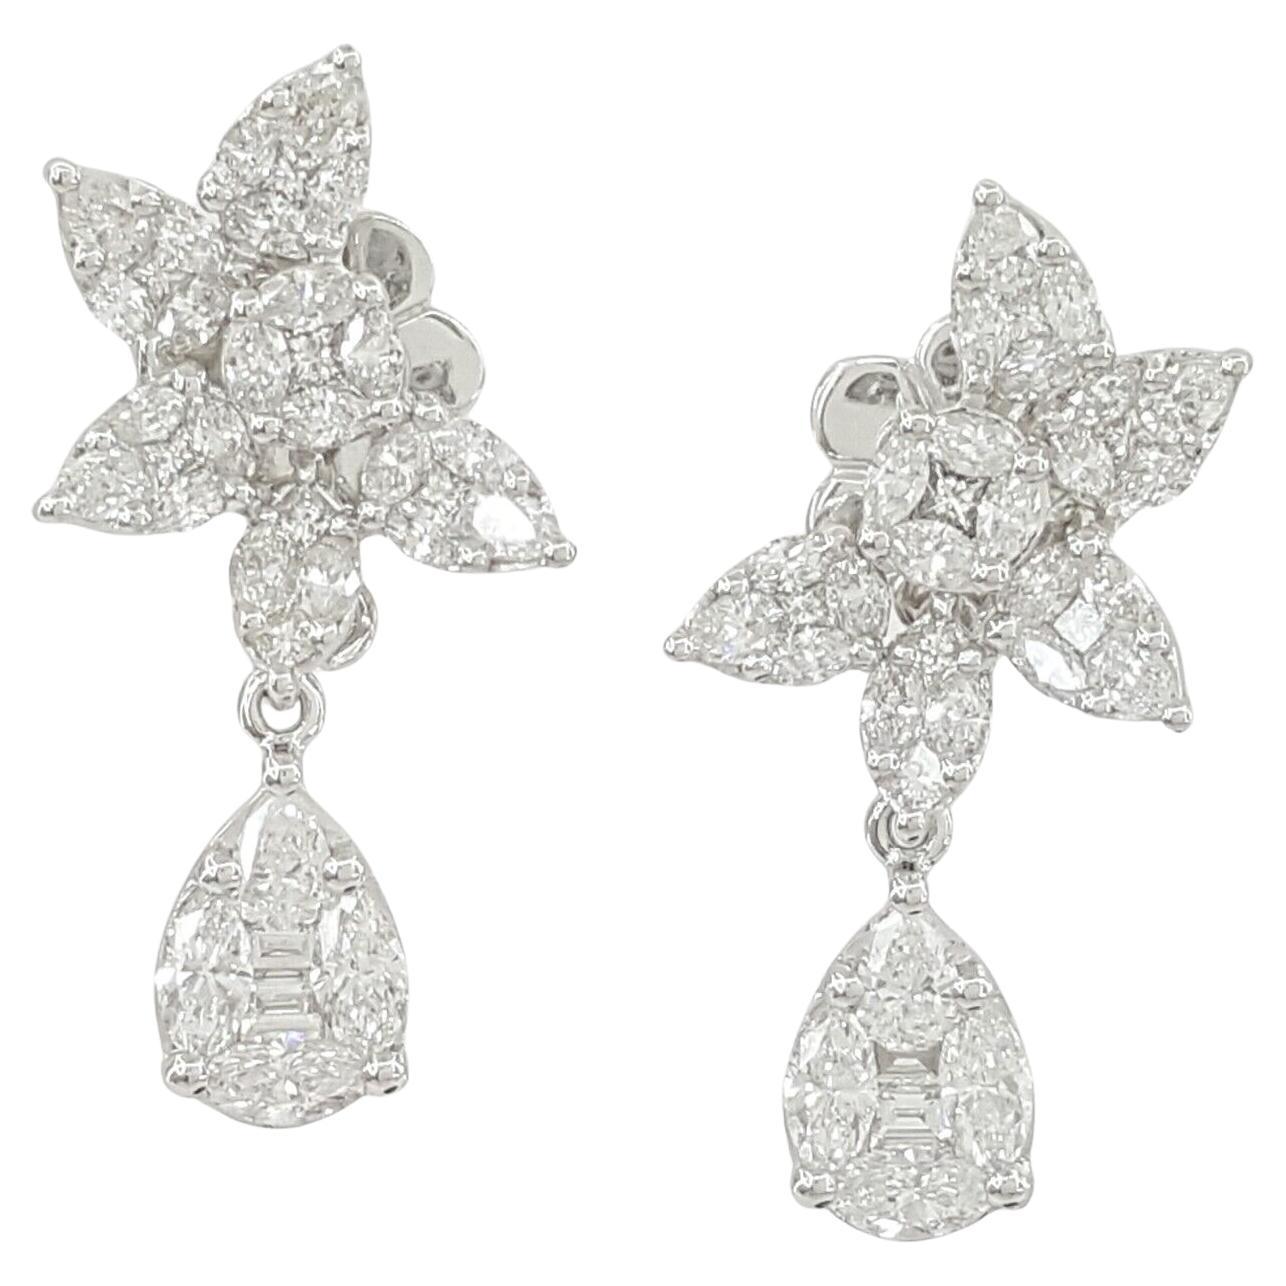 3 Carat Diamond Cluster Earrings E/F Color